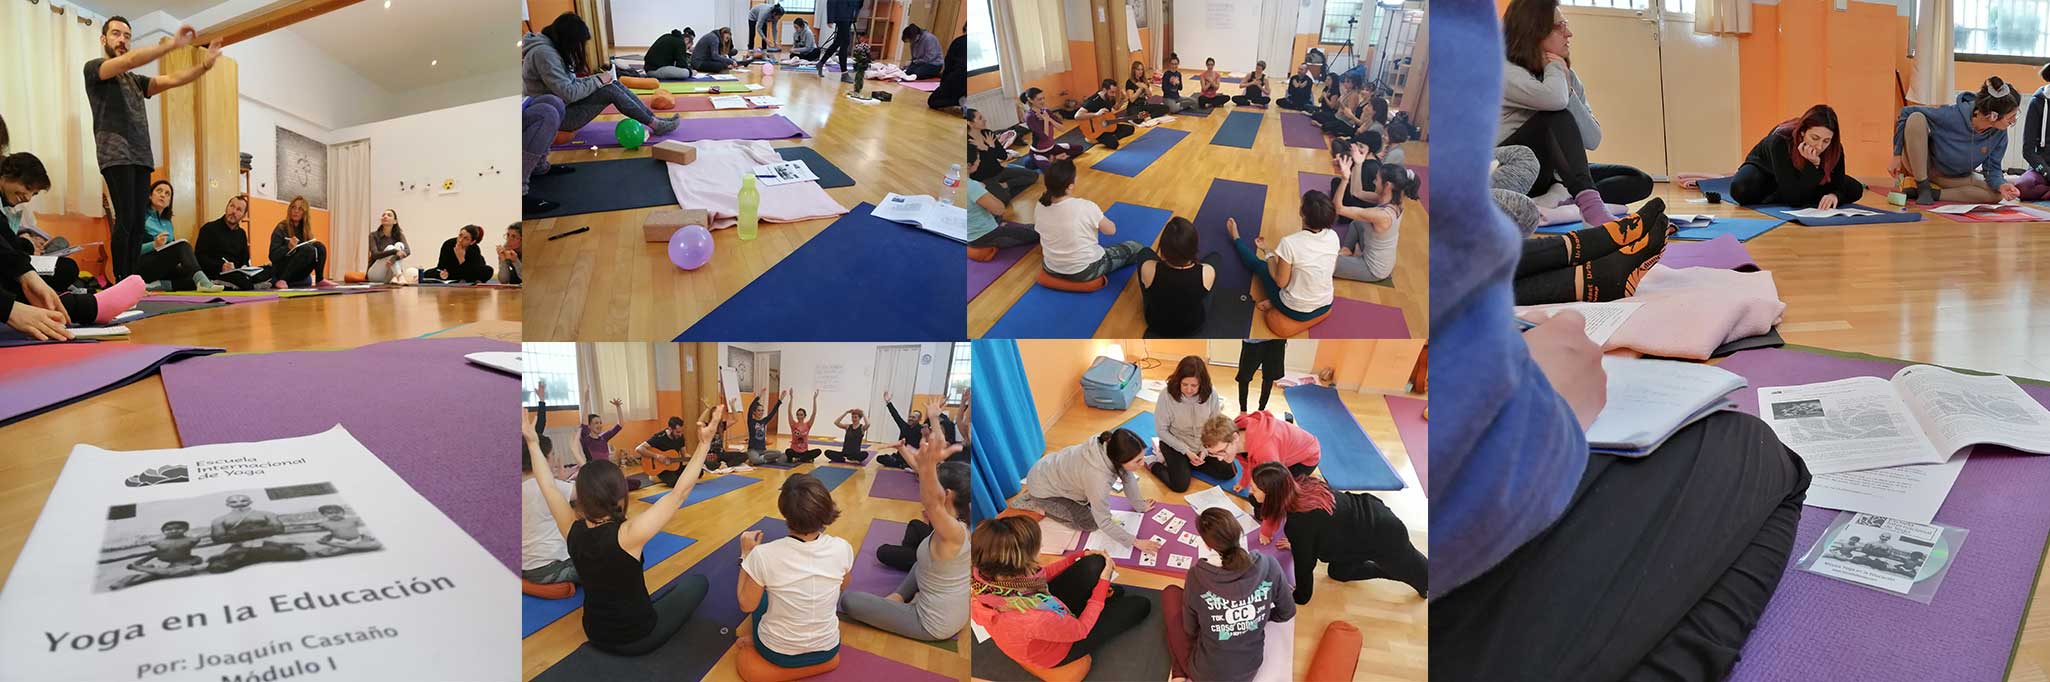 Curso Instructor/a de Yoga en la Educación- Escuela Internacional de Yoga